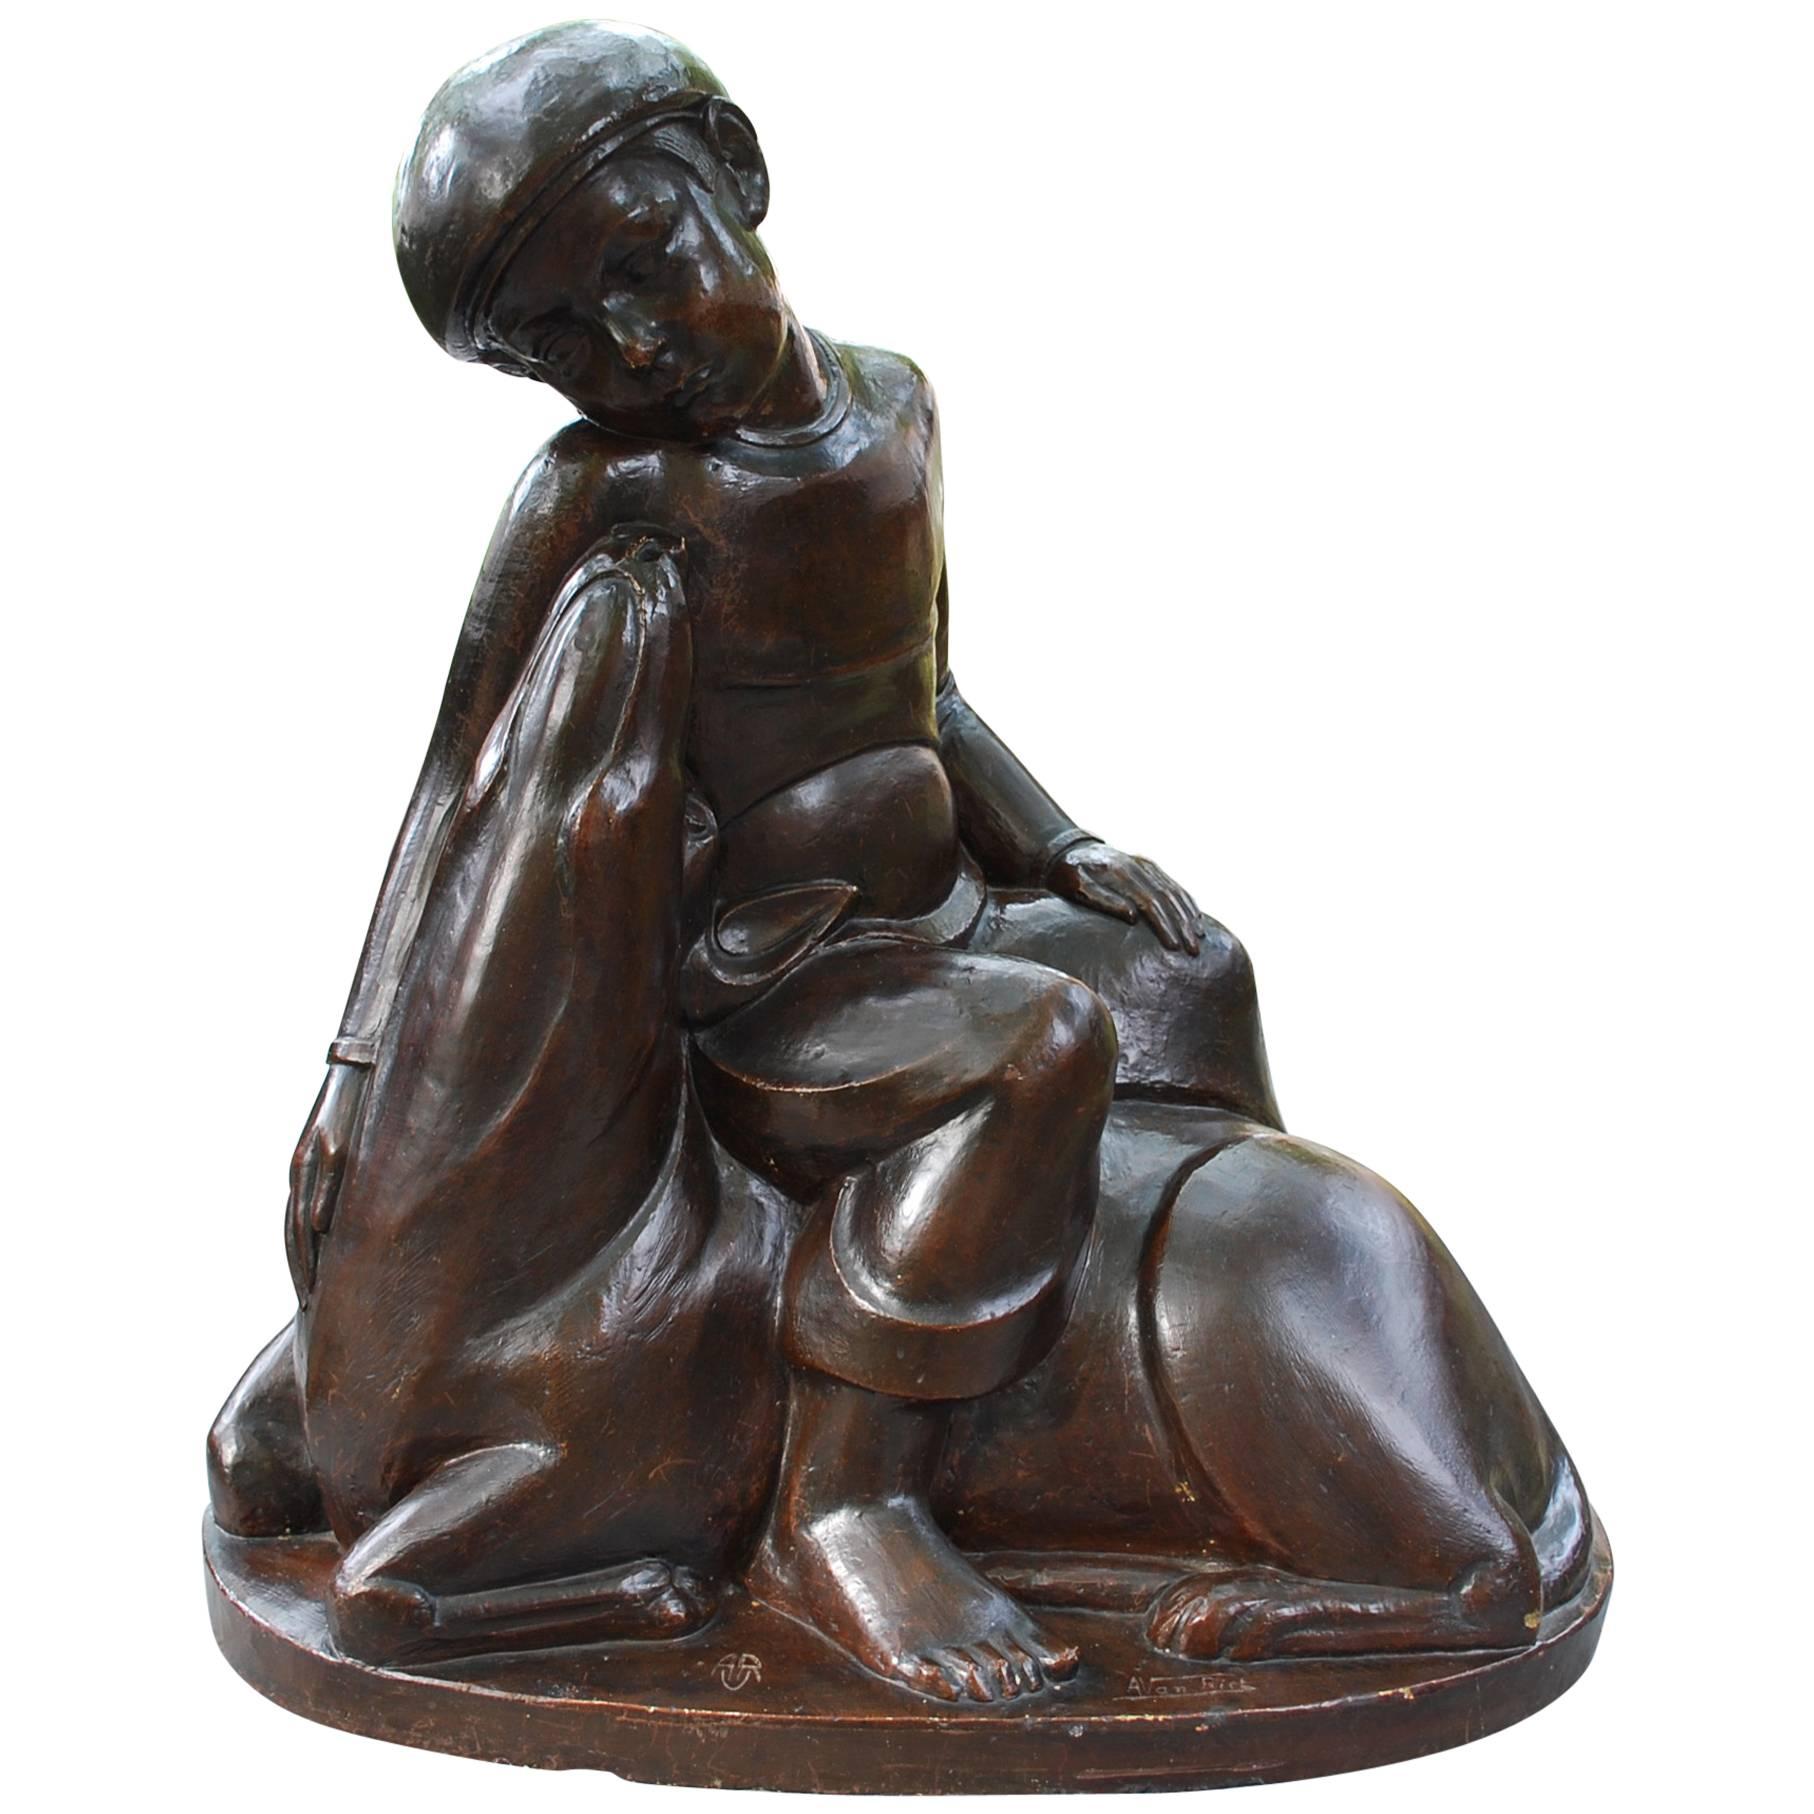 Statue Junge mit Hund des 20. Jahrhunderts von Alfons Vanriet 1892-1976